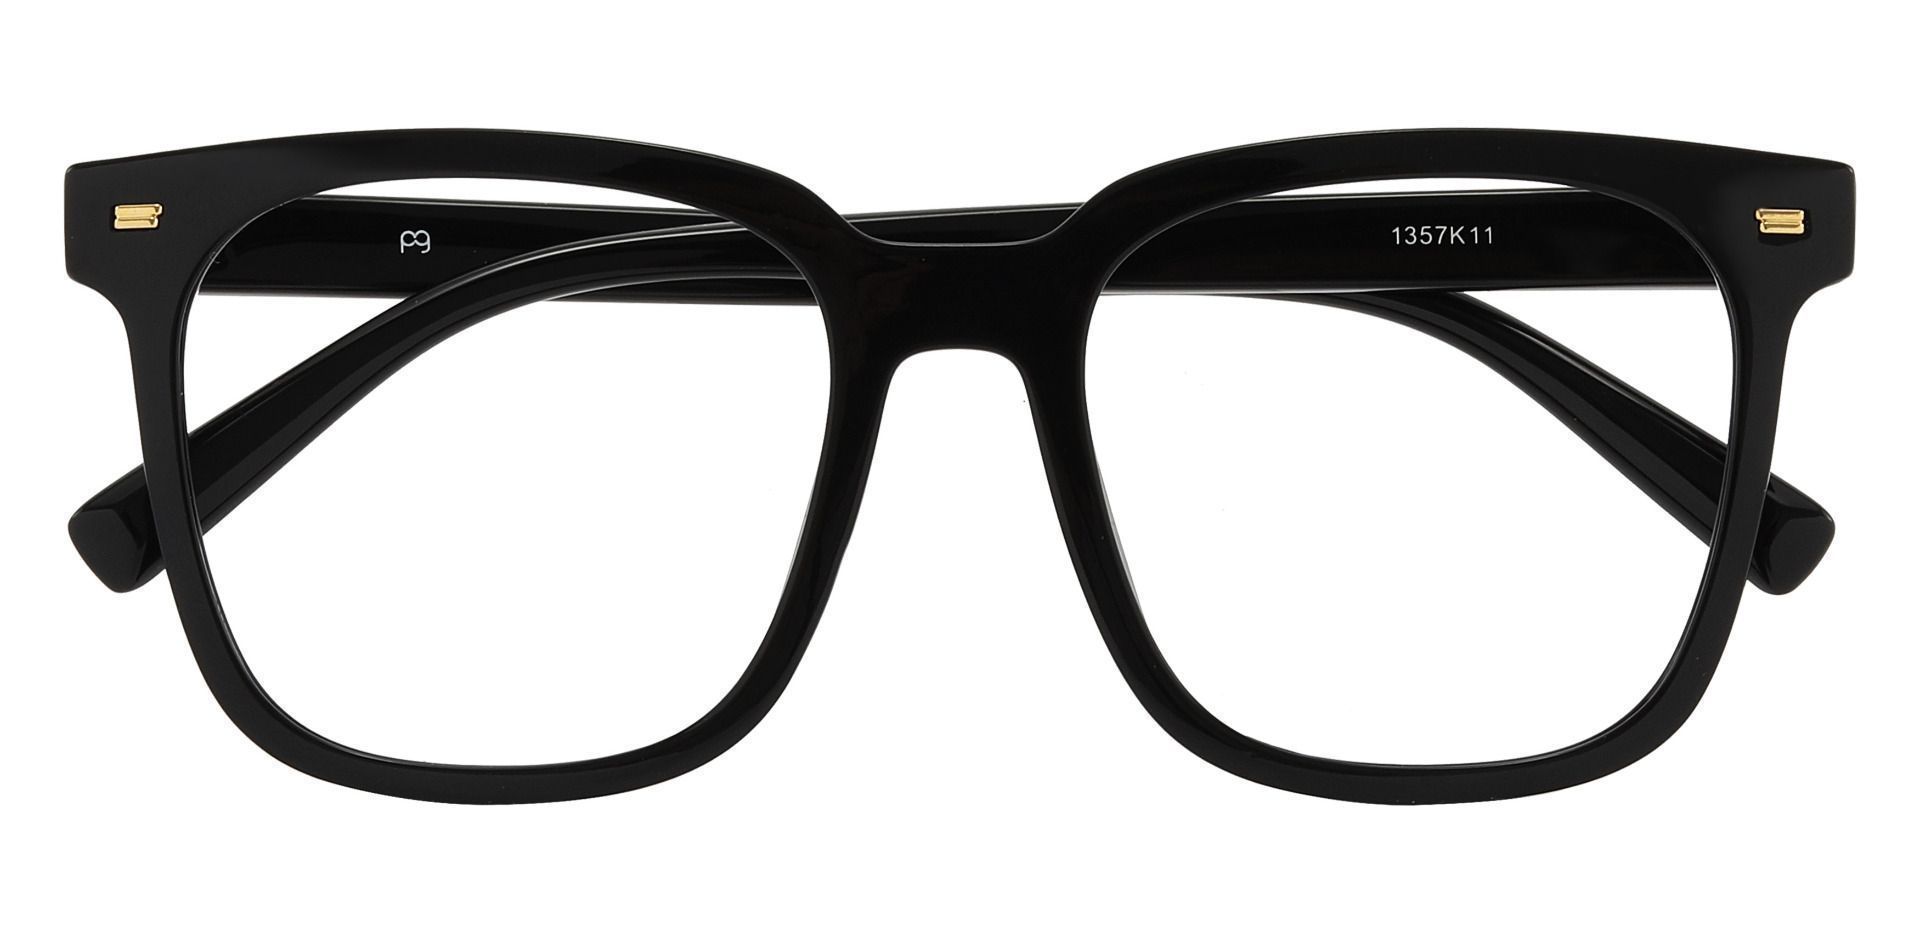 Charlie Oversized Eyeglasses Frame - Black, Men's Eyeglasses